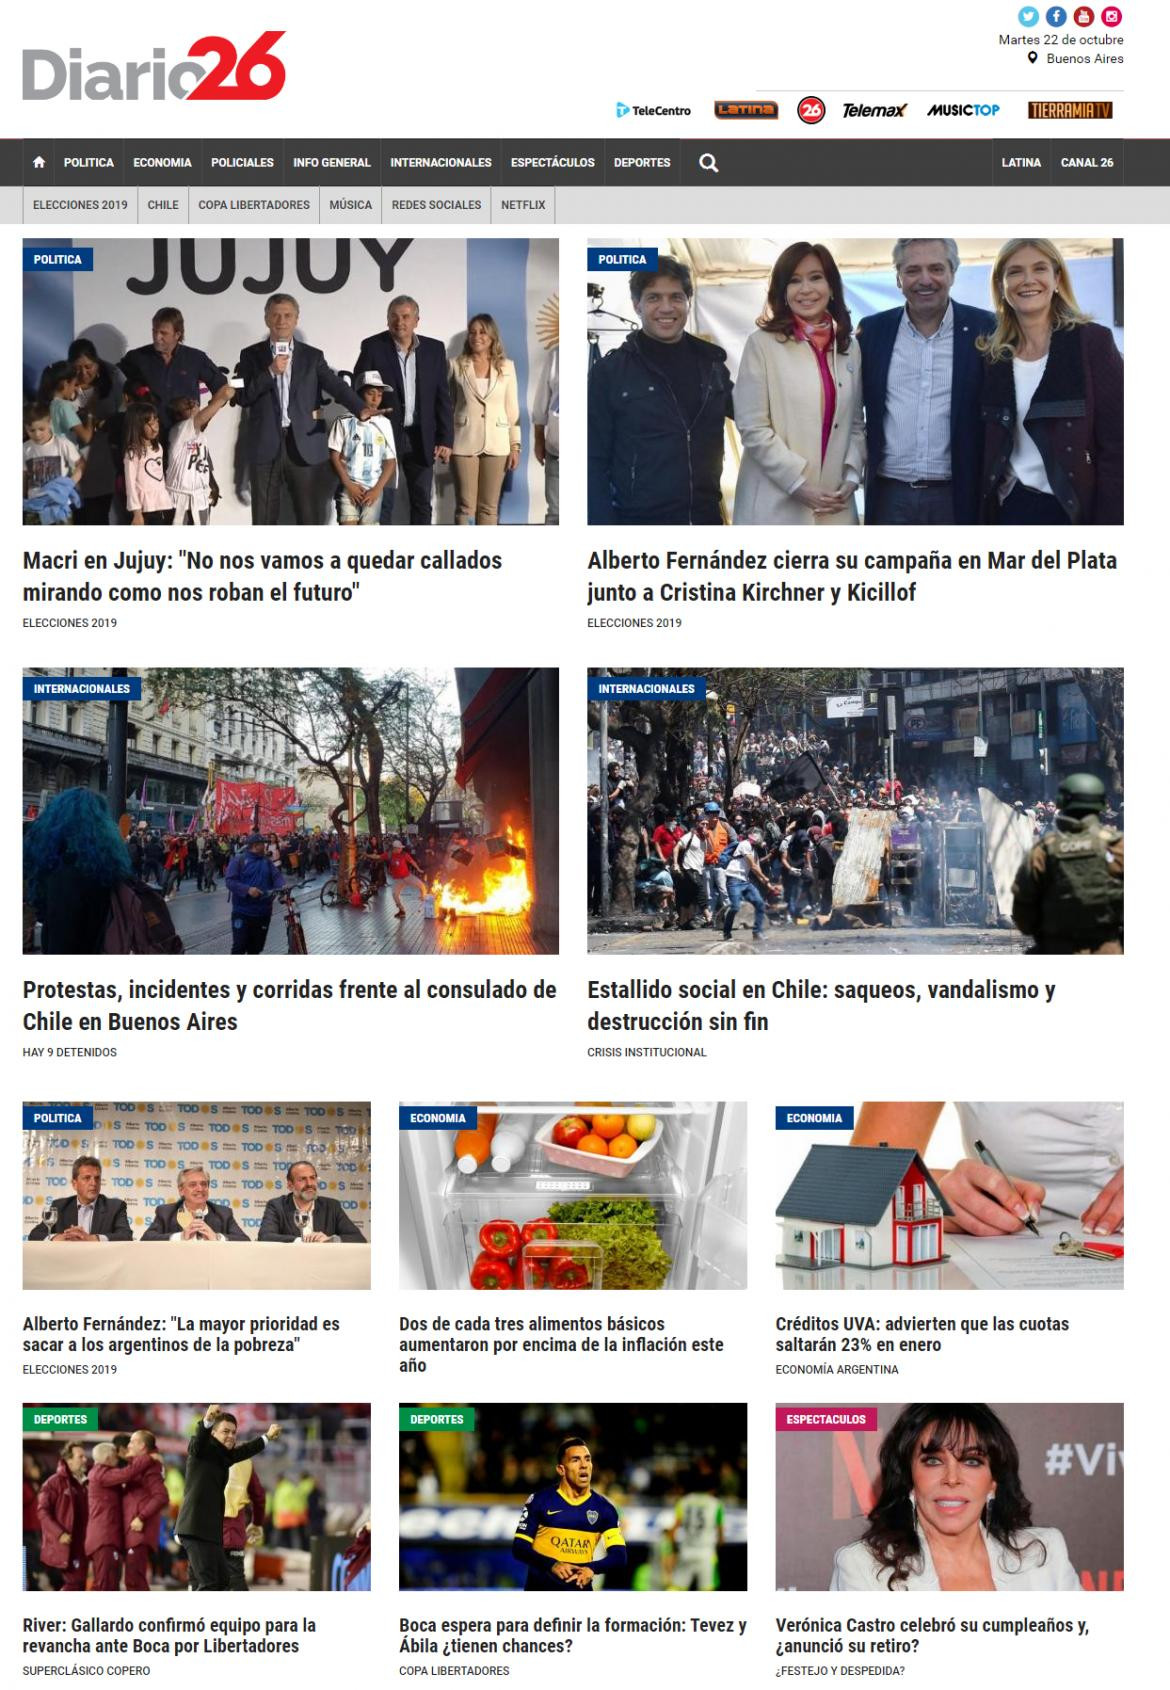 Tapas de Diarios, Diario 26 martes 22-10-19